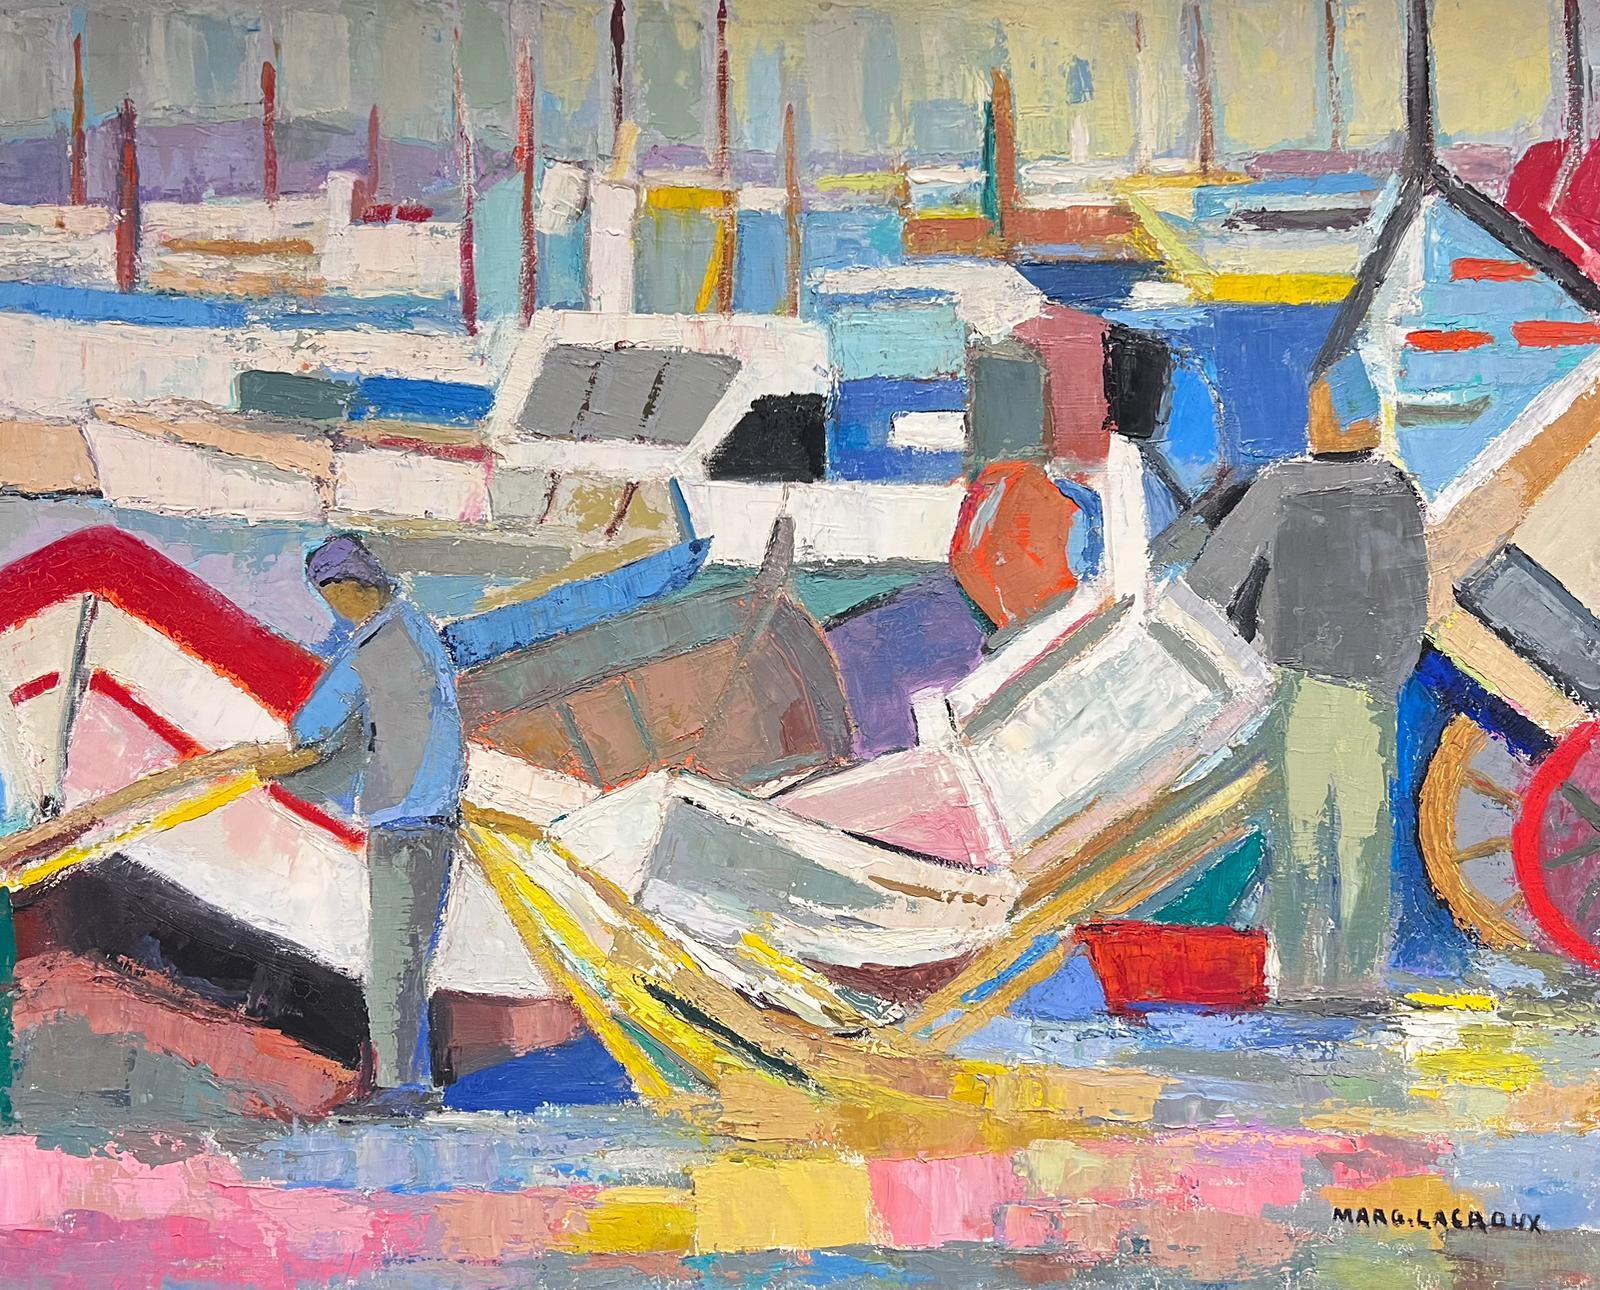 Landscape Painting Marguerite Lacroux - Grande carrière de pêcheur à l'huile avec bateaux du milieu du 20e siècle, signée par un cubiste français